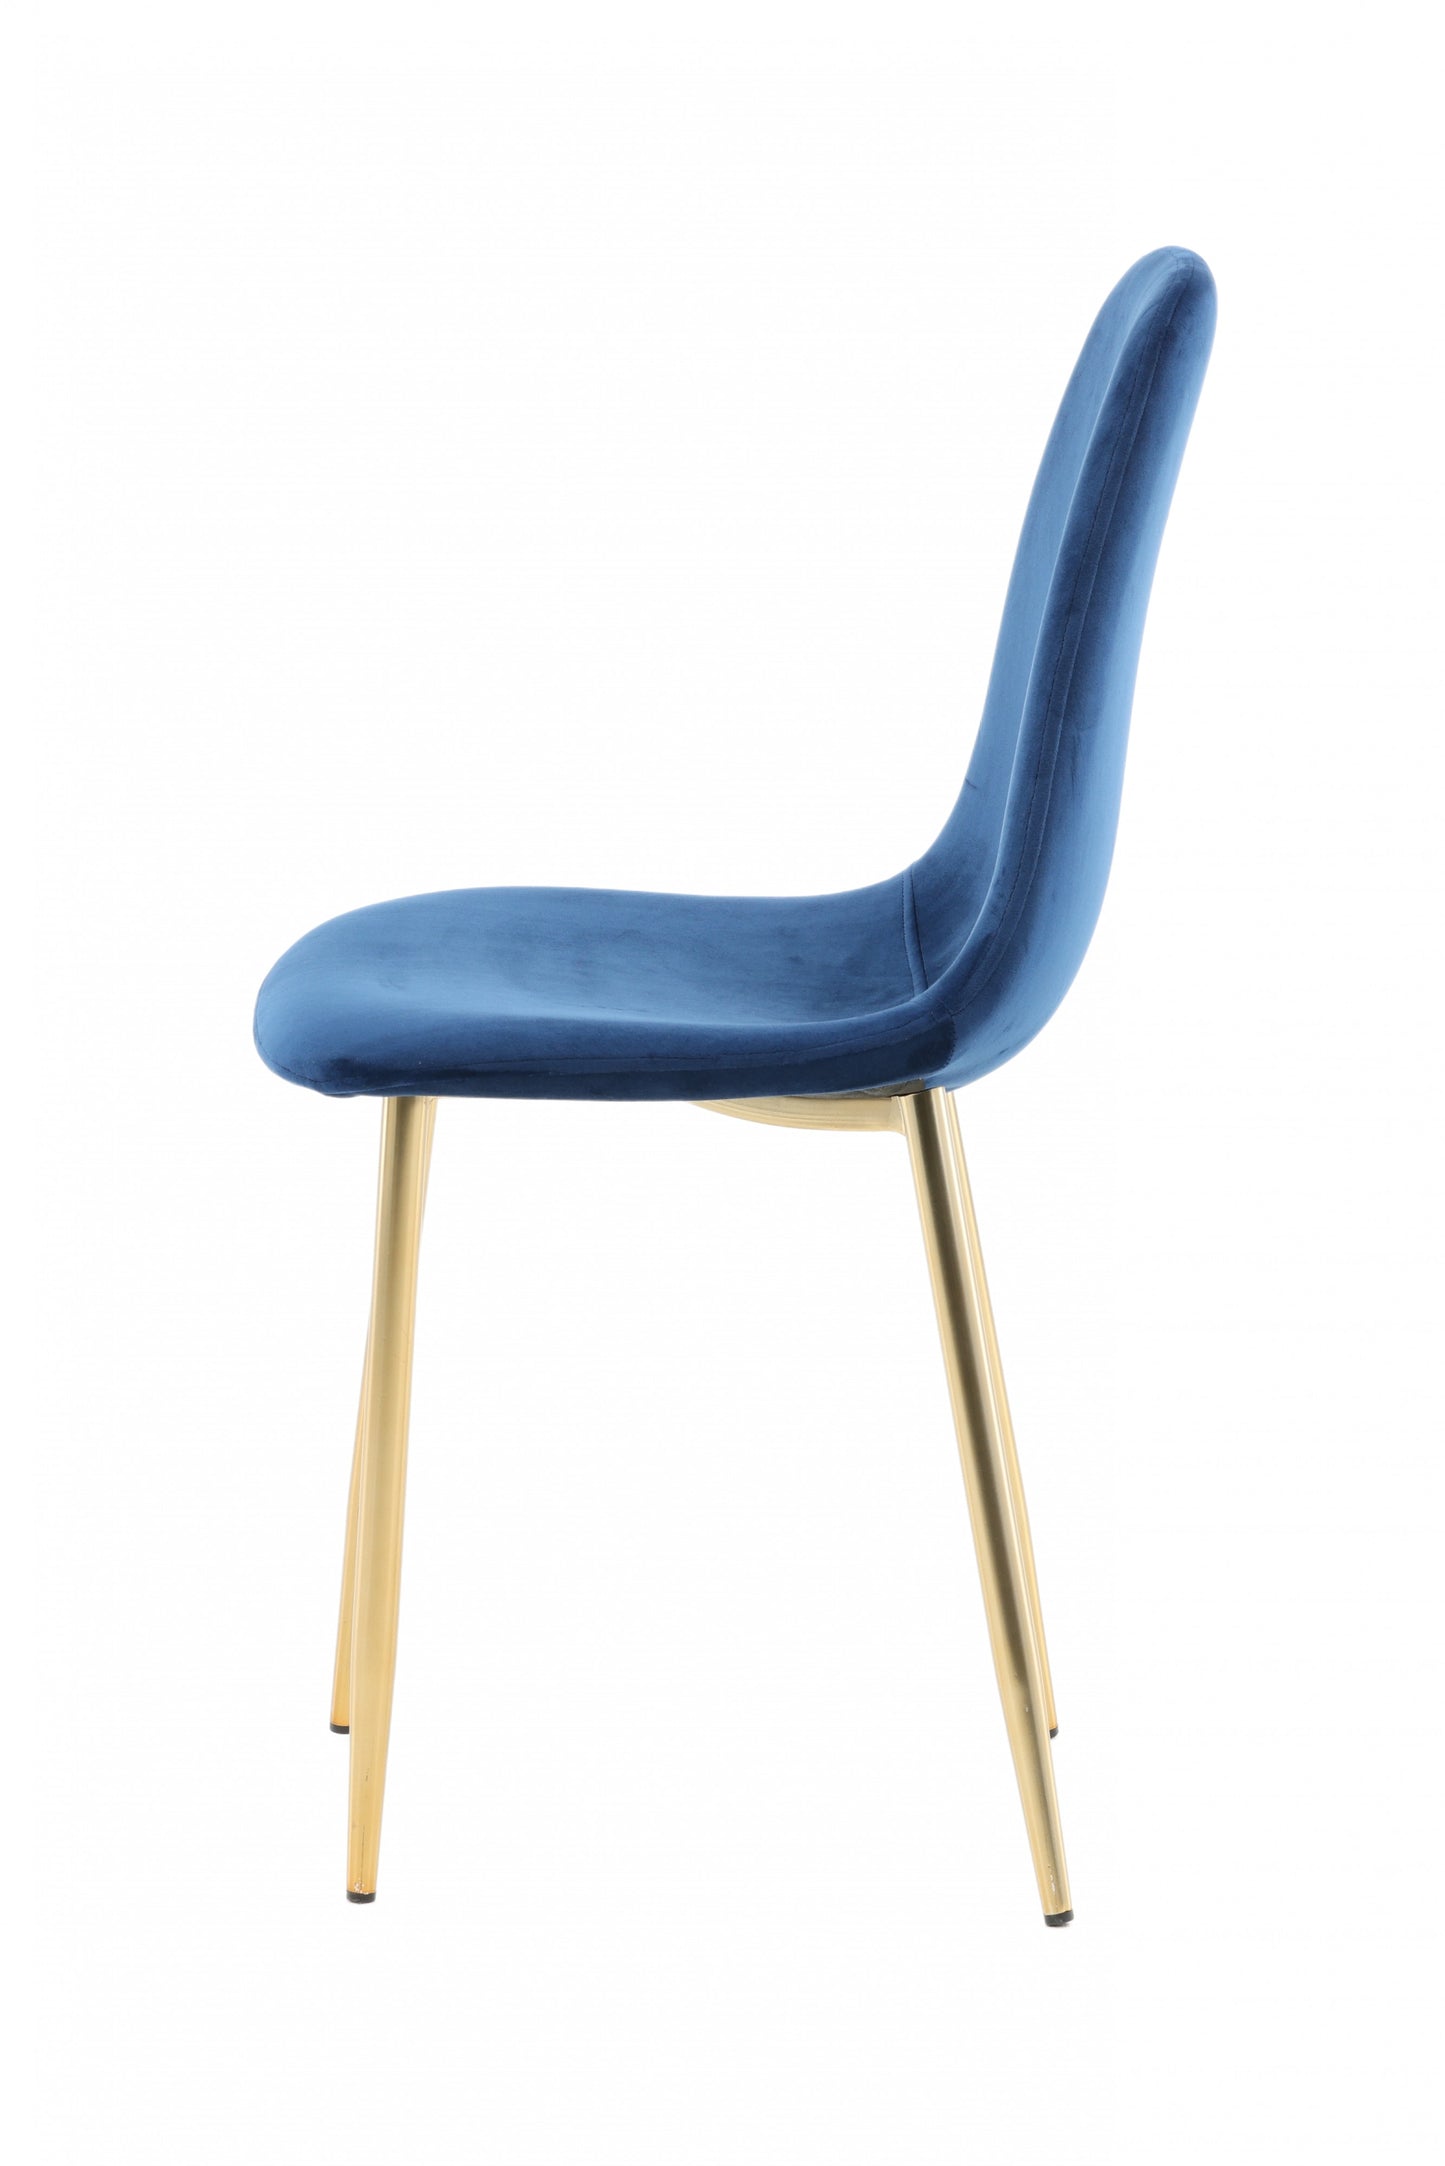 Venture-Design | Stuhl Polar - Blauer Velours / Beine aus mattem Messing